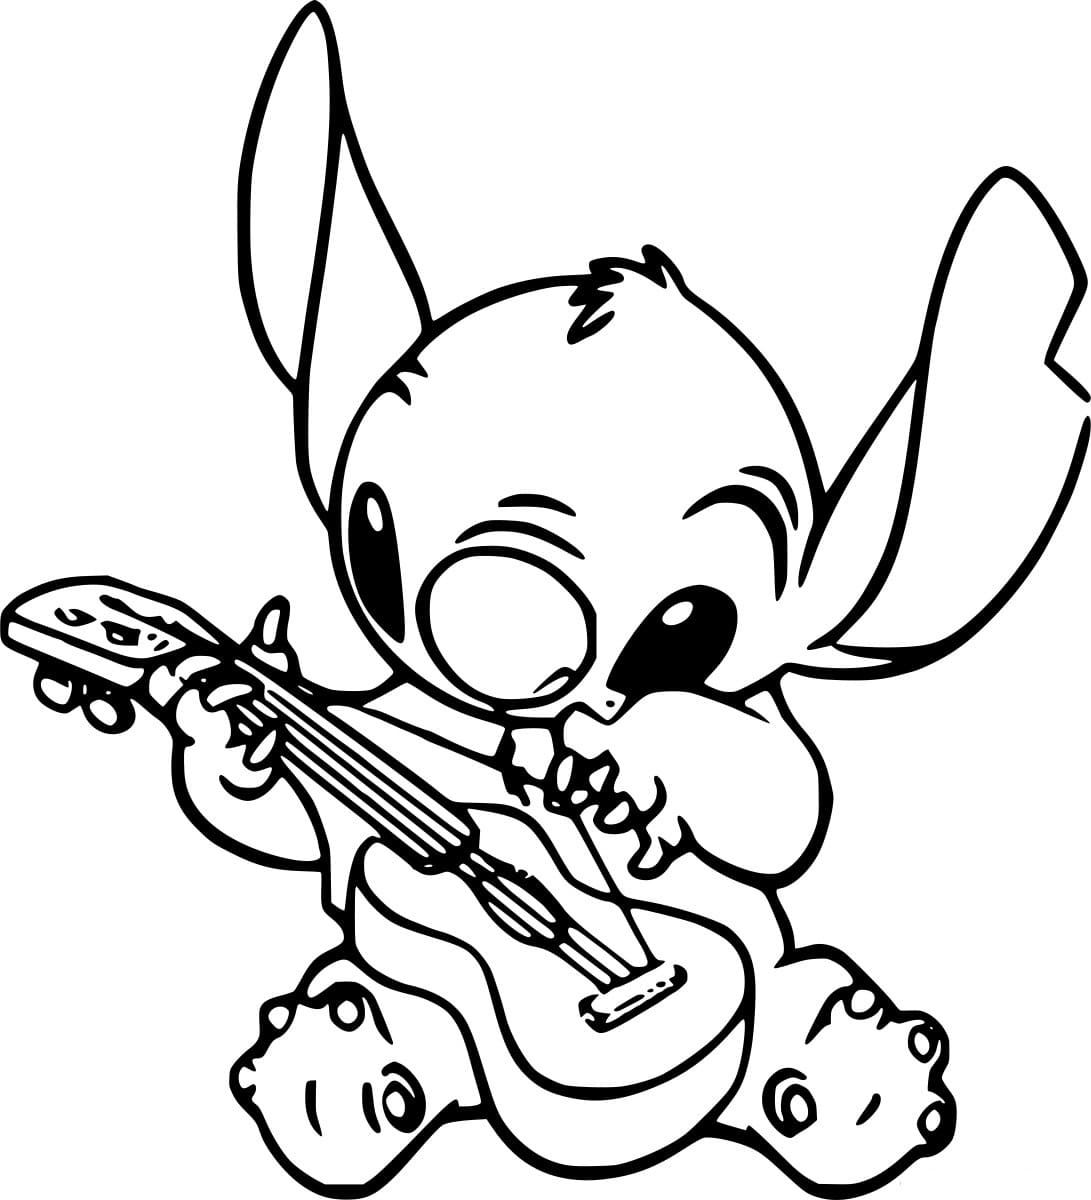 Stitch spielt Gitarre